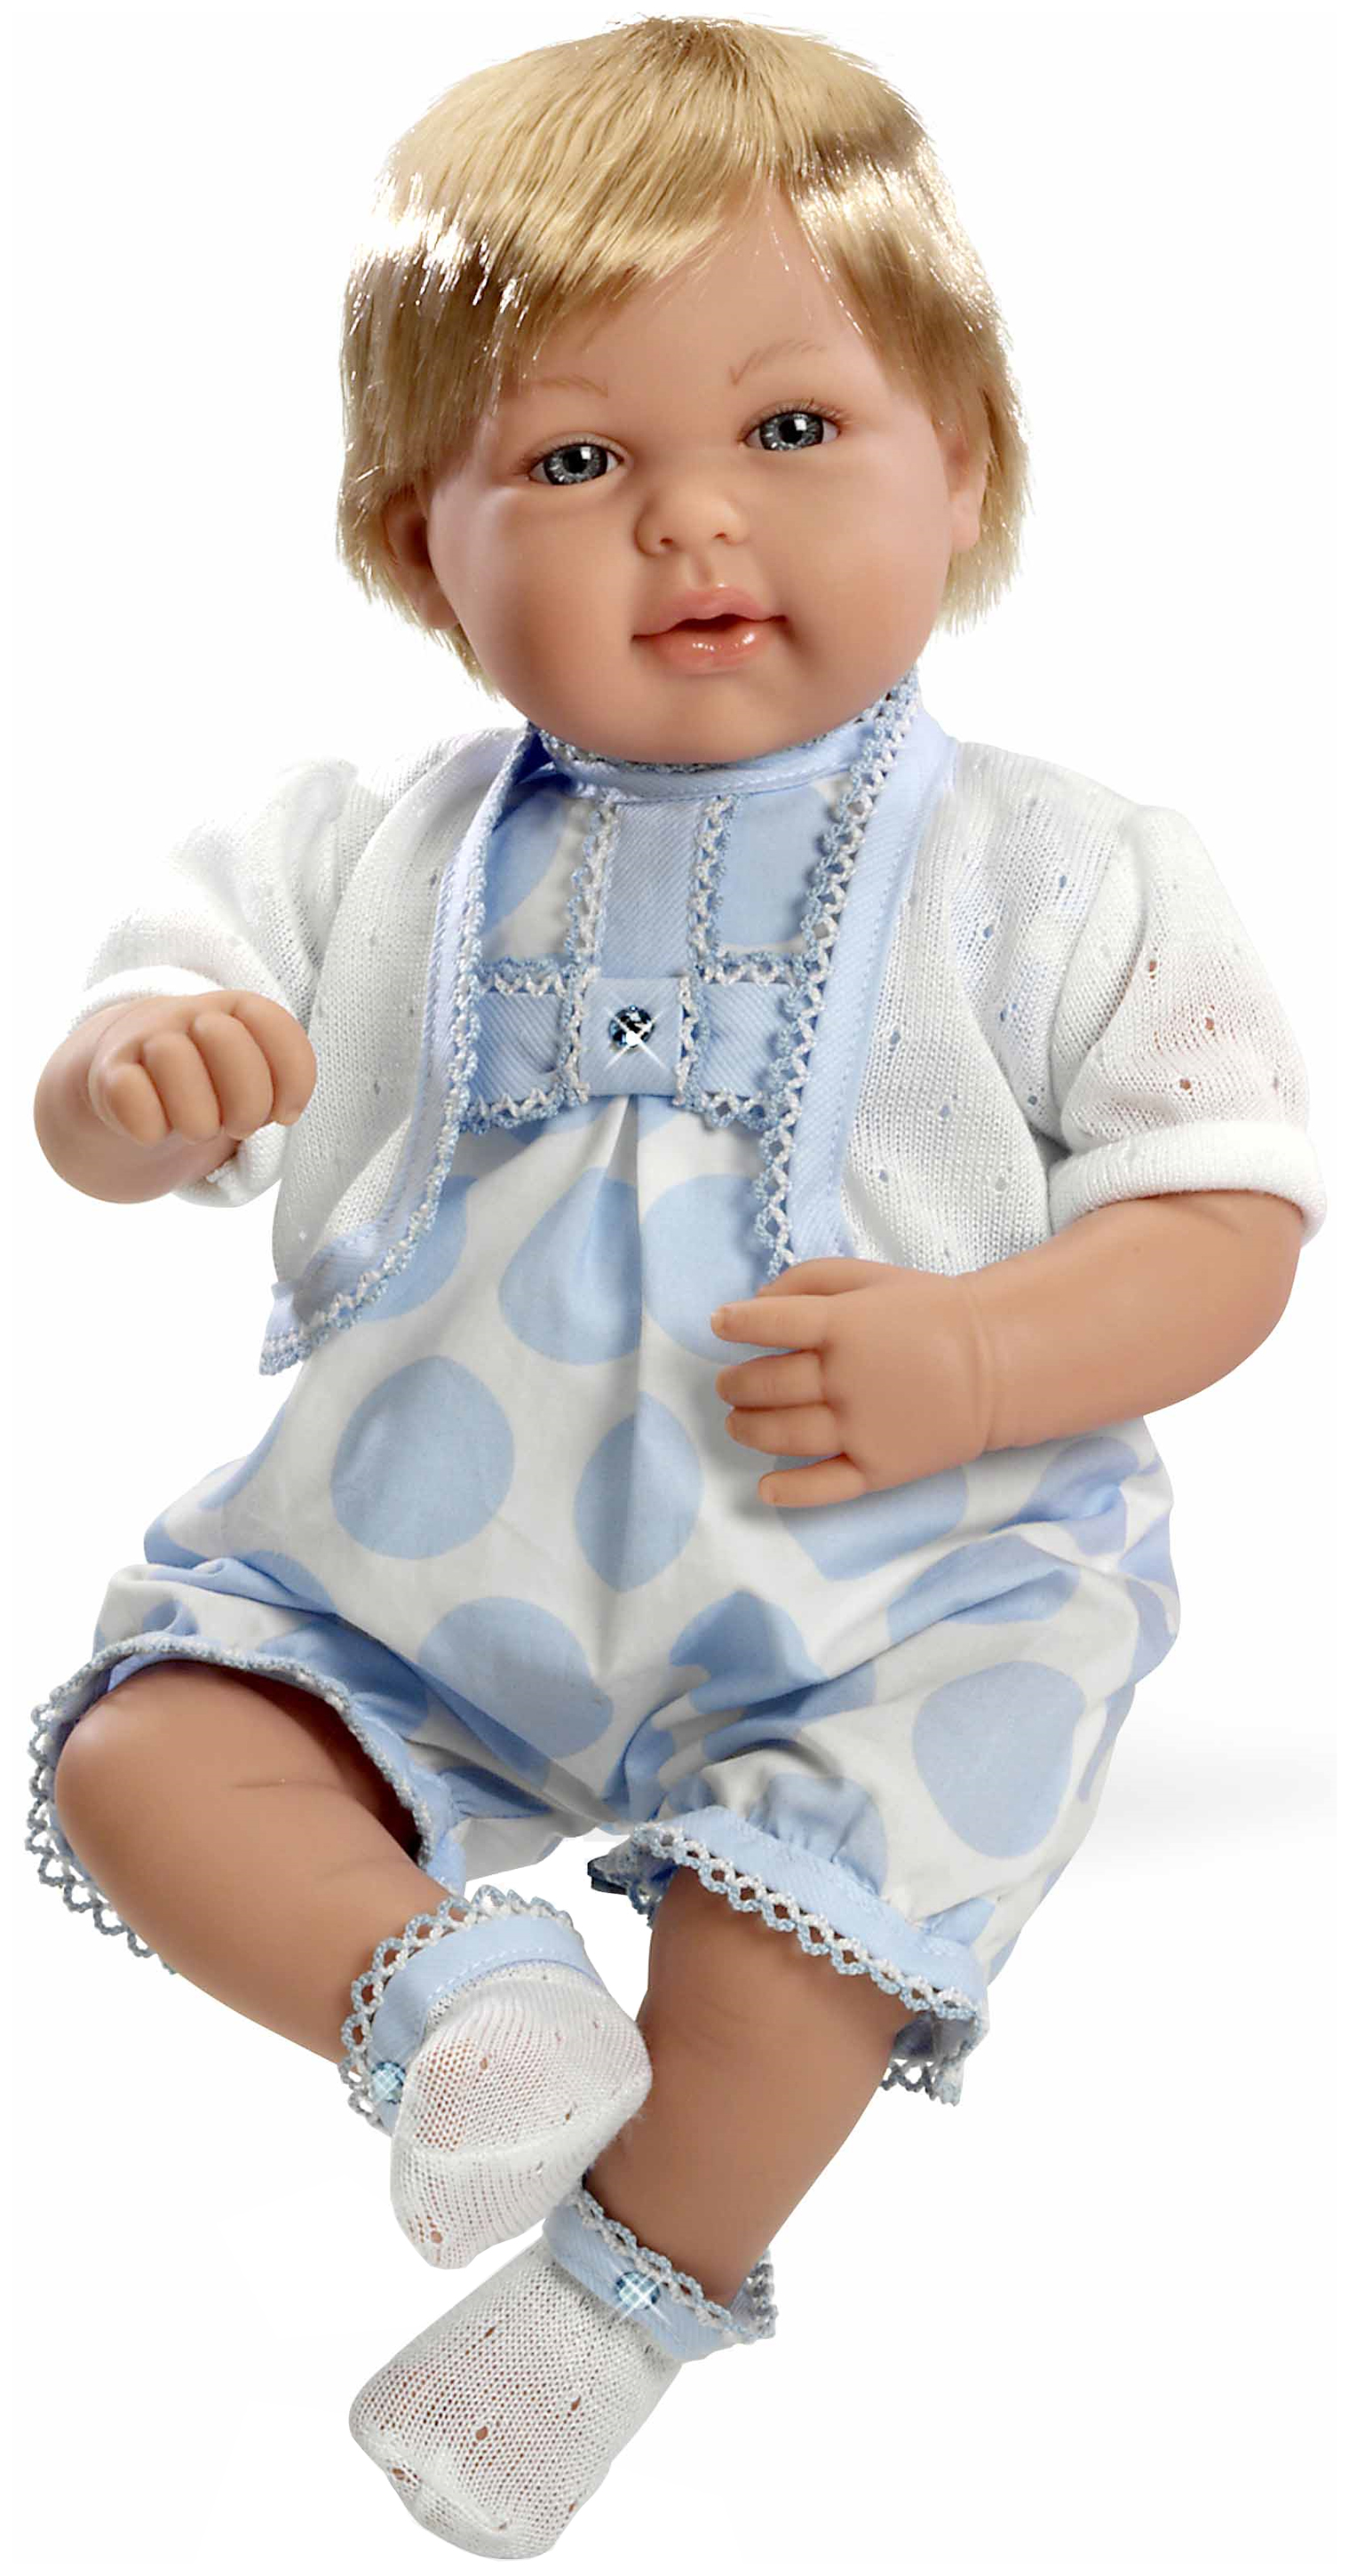 Кукла Arias с кристаллами Swarovski в голубой одежде 45 см Т11134